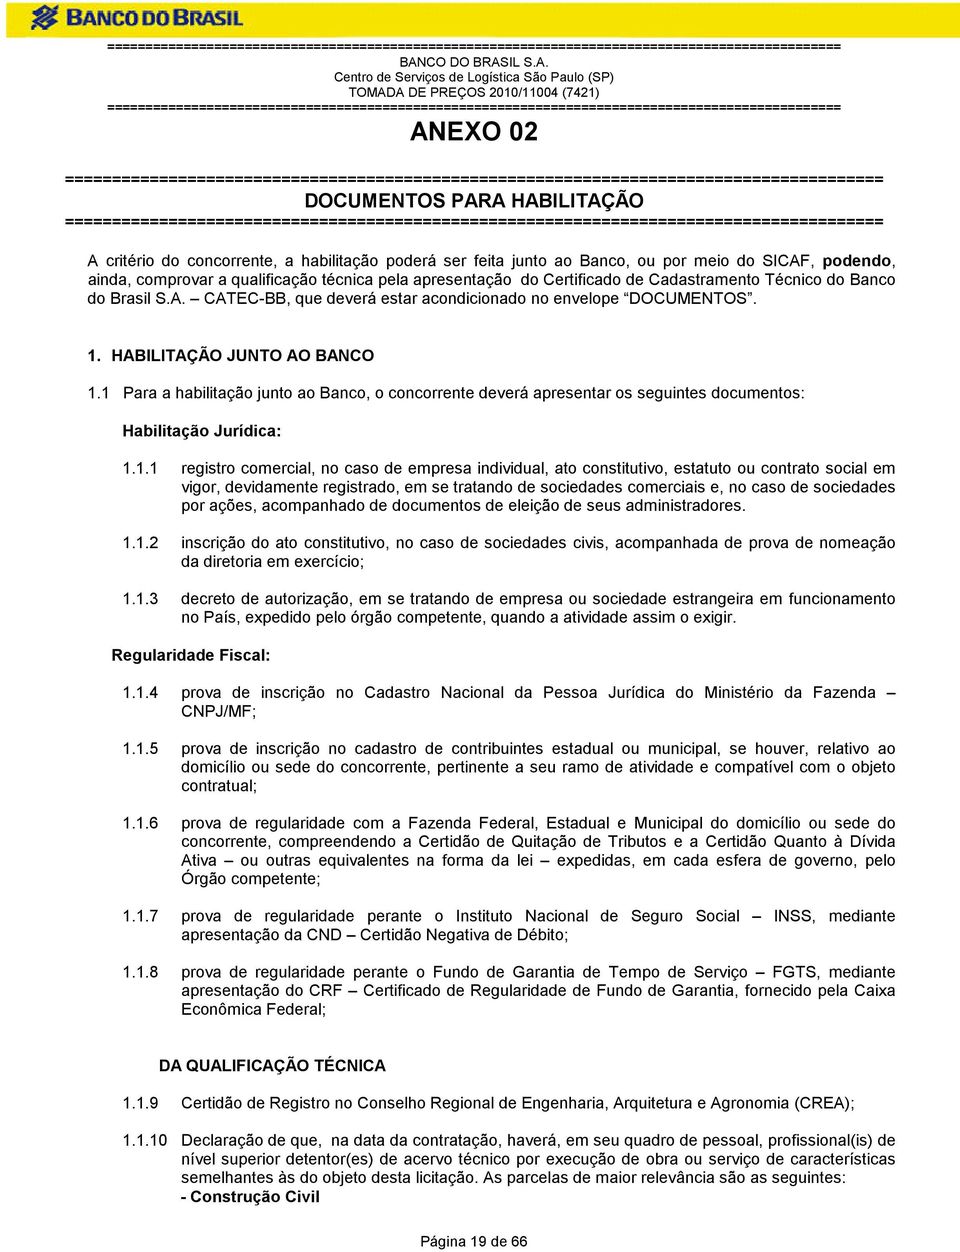 comprovar a qualificação técnica pela apresentação do Certificado de Cadastramento Técnico do Banco do Brasil S.A. CATEC-BB, que deverá estar acondicionado no envelope DOCUMENTOS. 1.